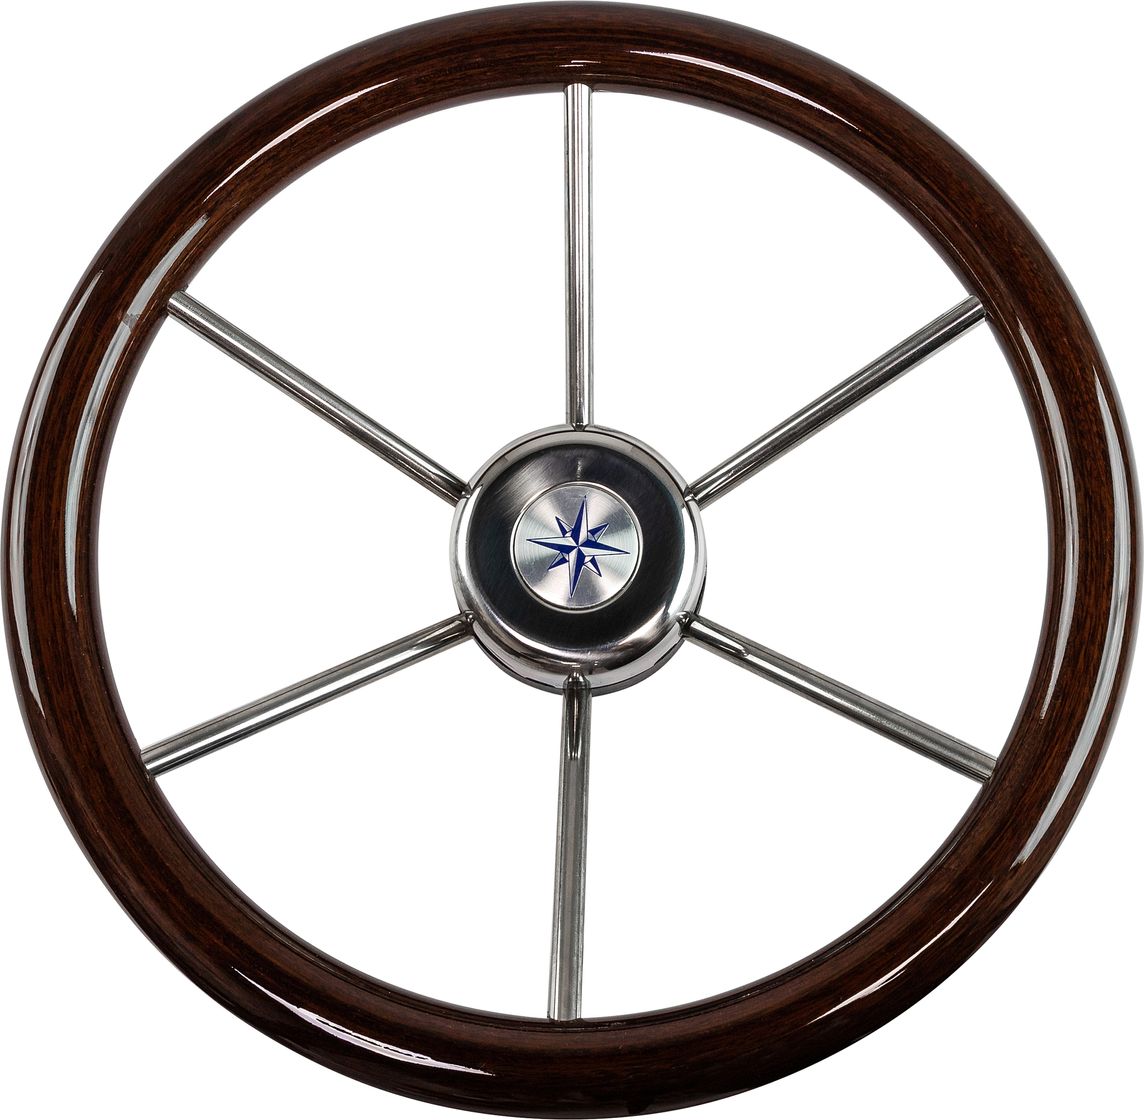 Рулевое колесо LEADER WOOD деревянный обод серебряные спицы д. 360 мм VN7360-33 набор из двух столов из журнального стола rough mango wood round 40 см 50 см